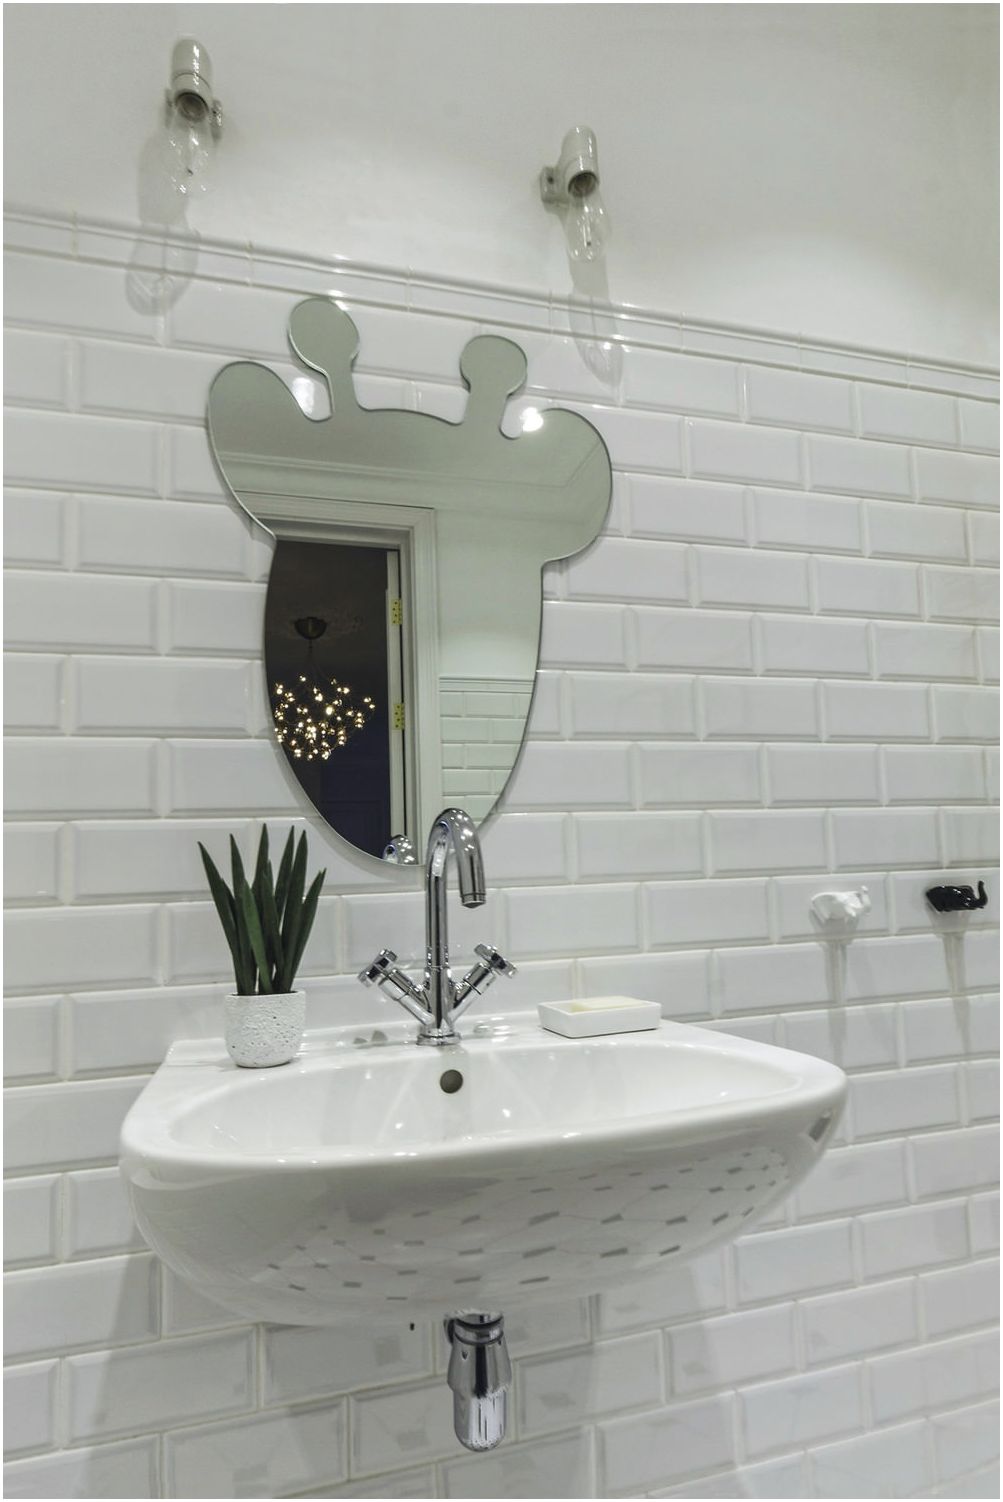 spiegel in de vorm van een giraffe in het ontwerp van een kinderbadkamer